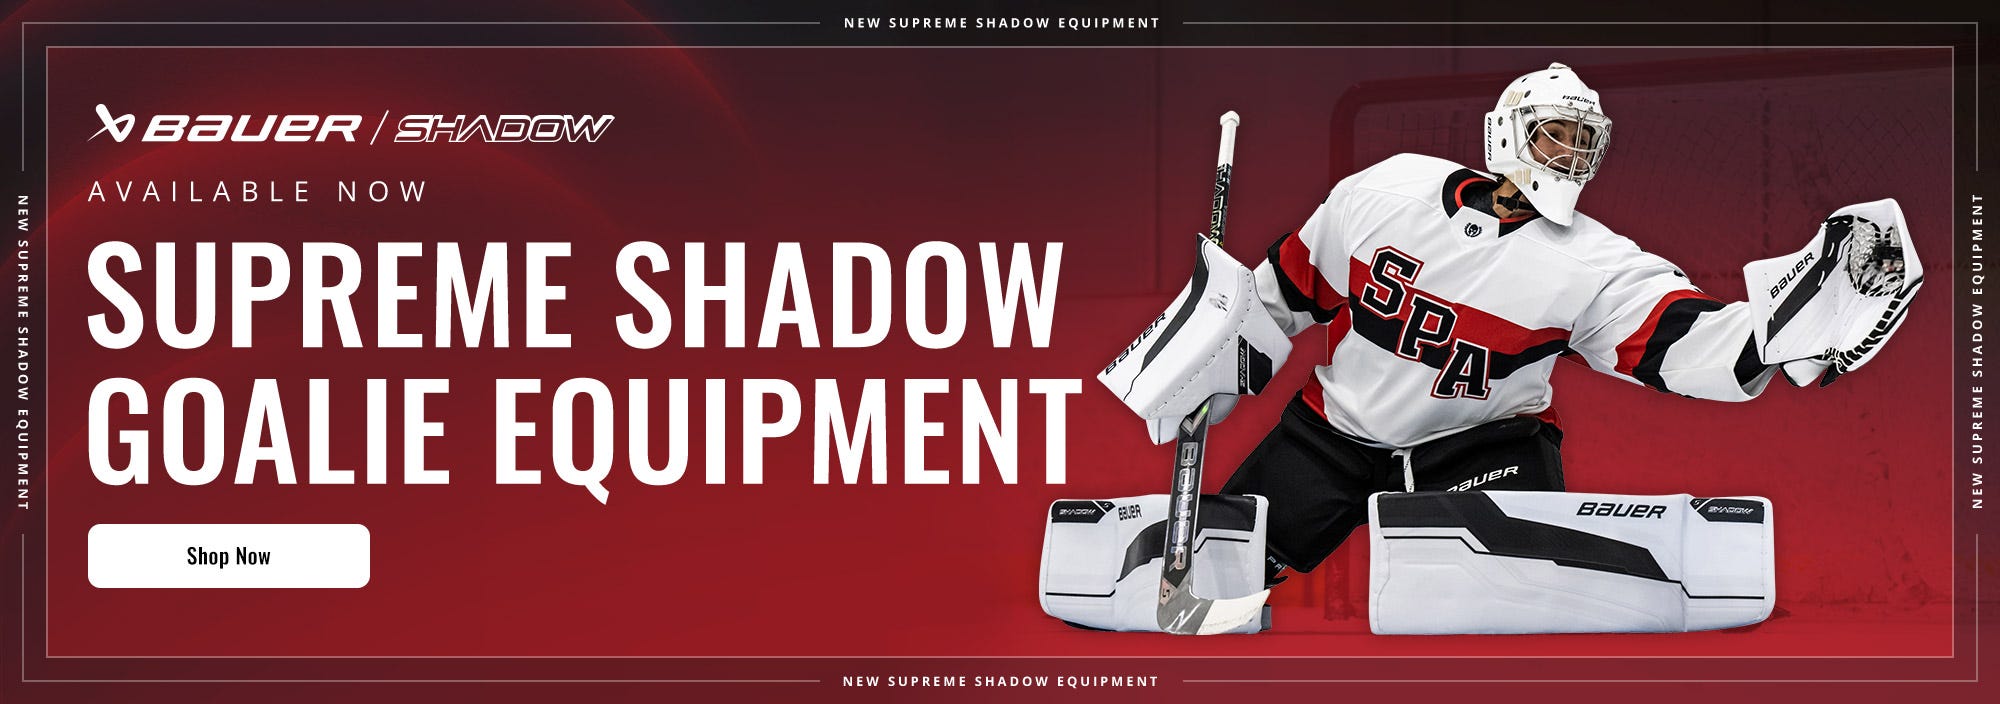 Bauer Supreme Shadow Goalie Equipment